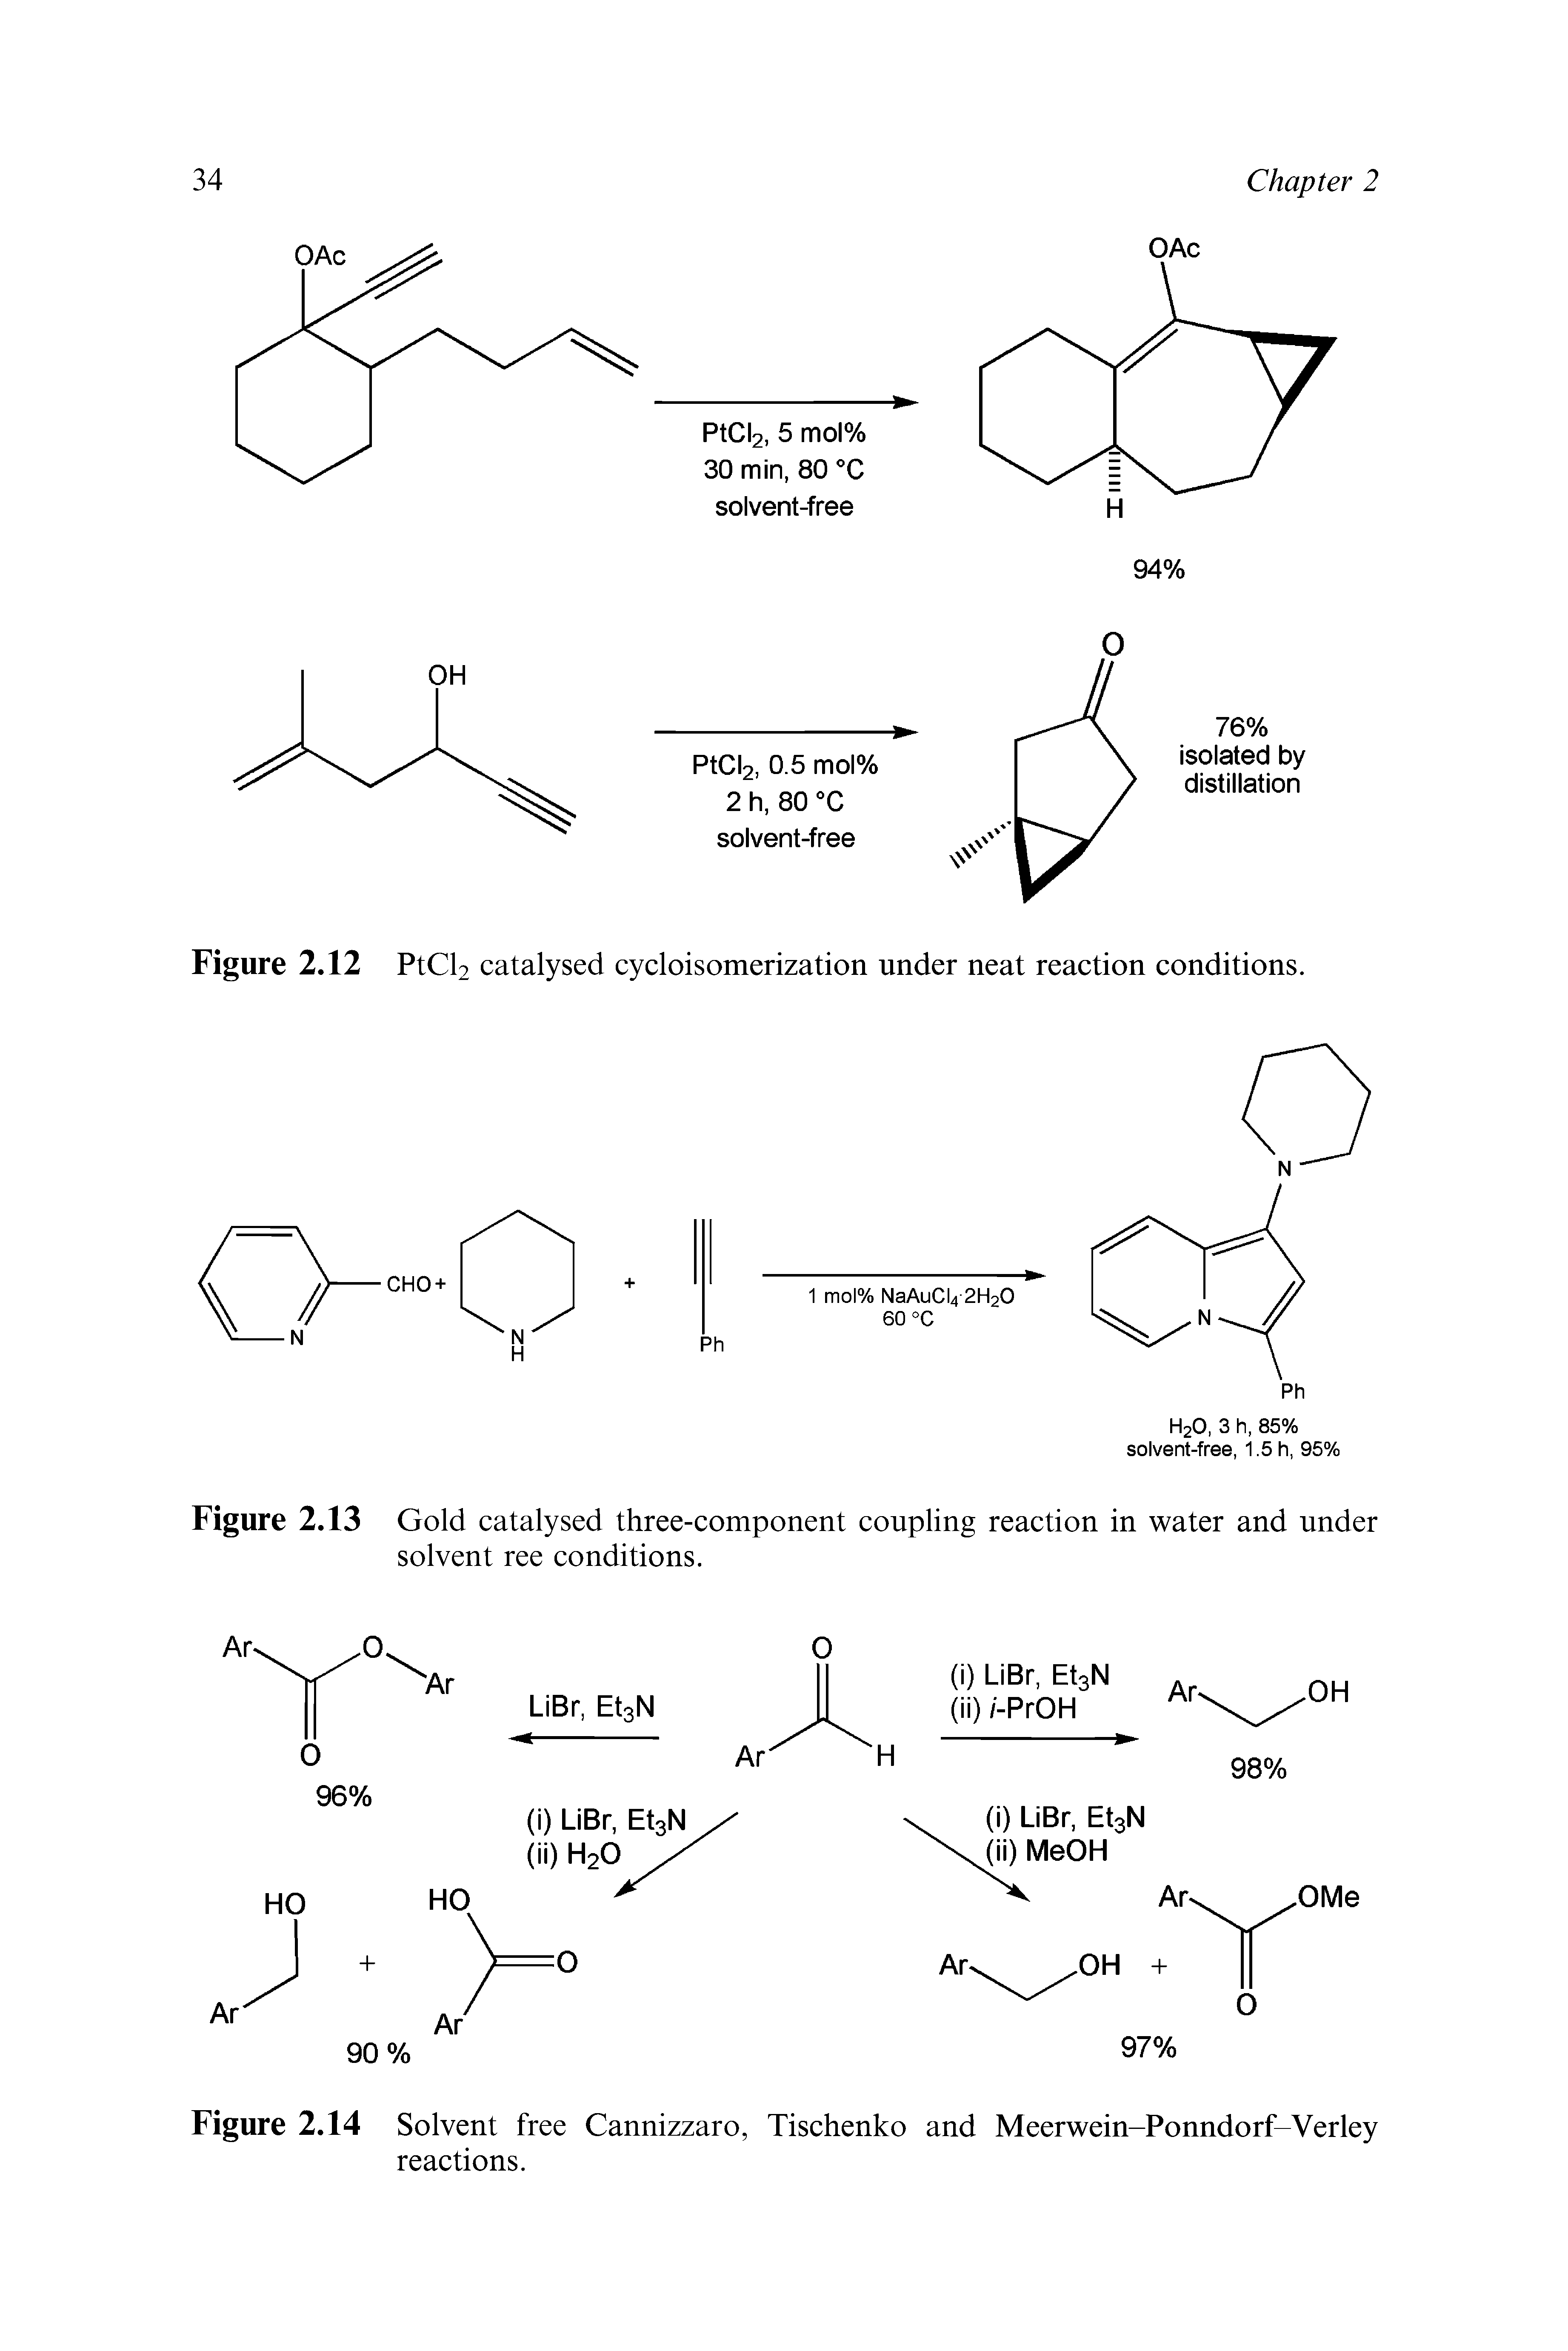 Figure 2.14 Solvent free Cannizzaro, Tischenko and Meerwein-Ponndorf-Verley reactions.